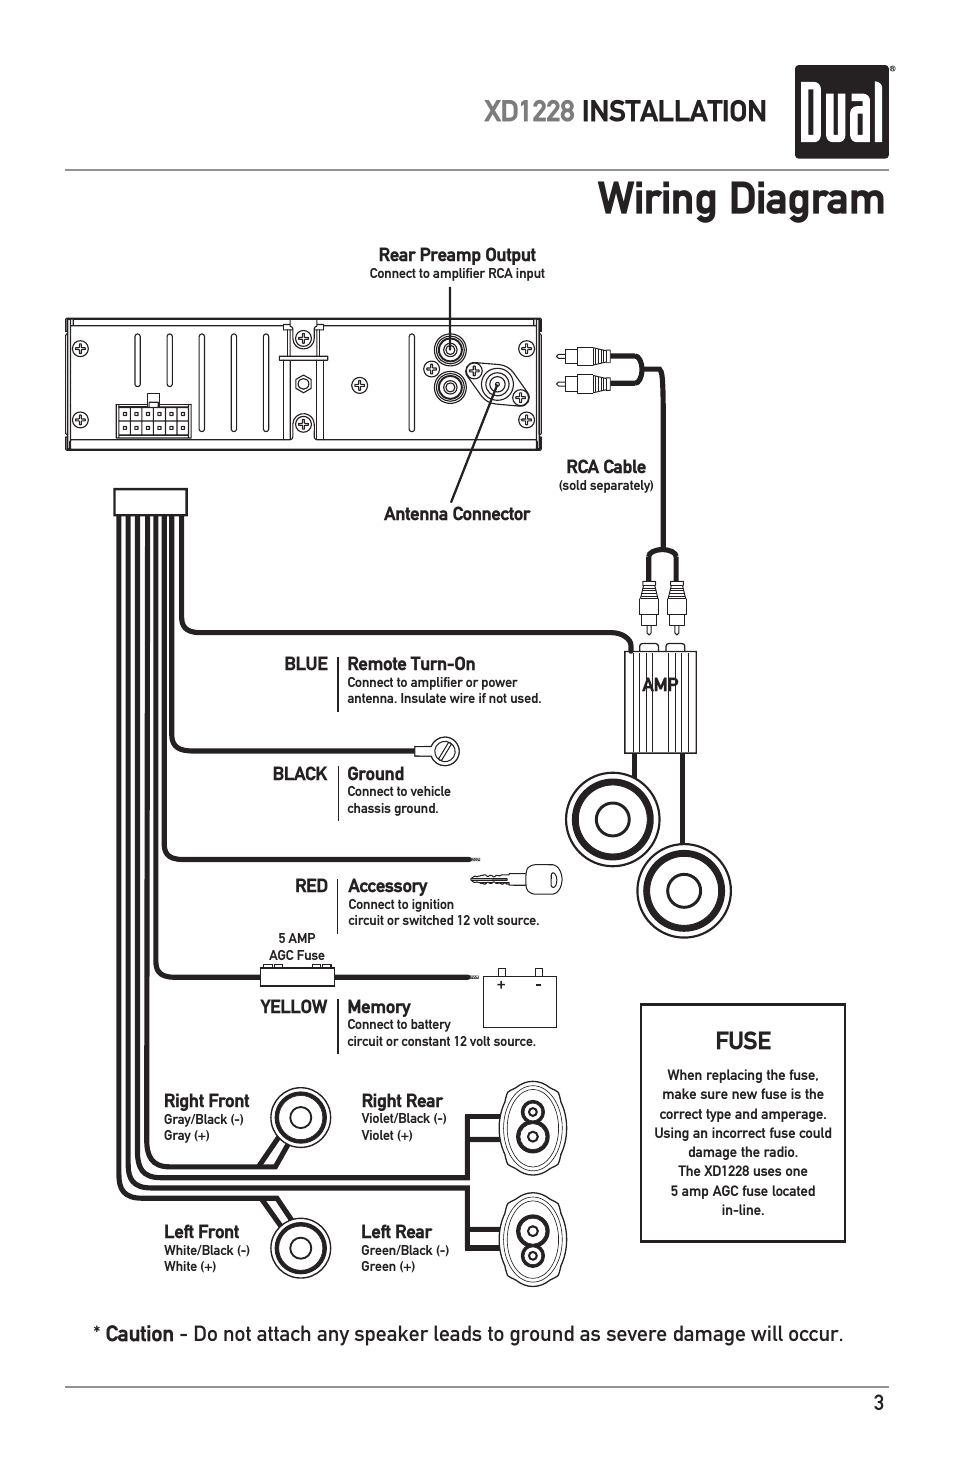 ouku car dvd wiring diagram wiring diagram mix ouku car dvd wiring diagram